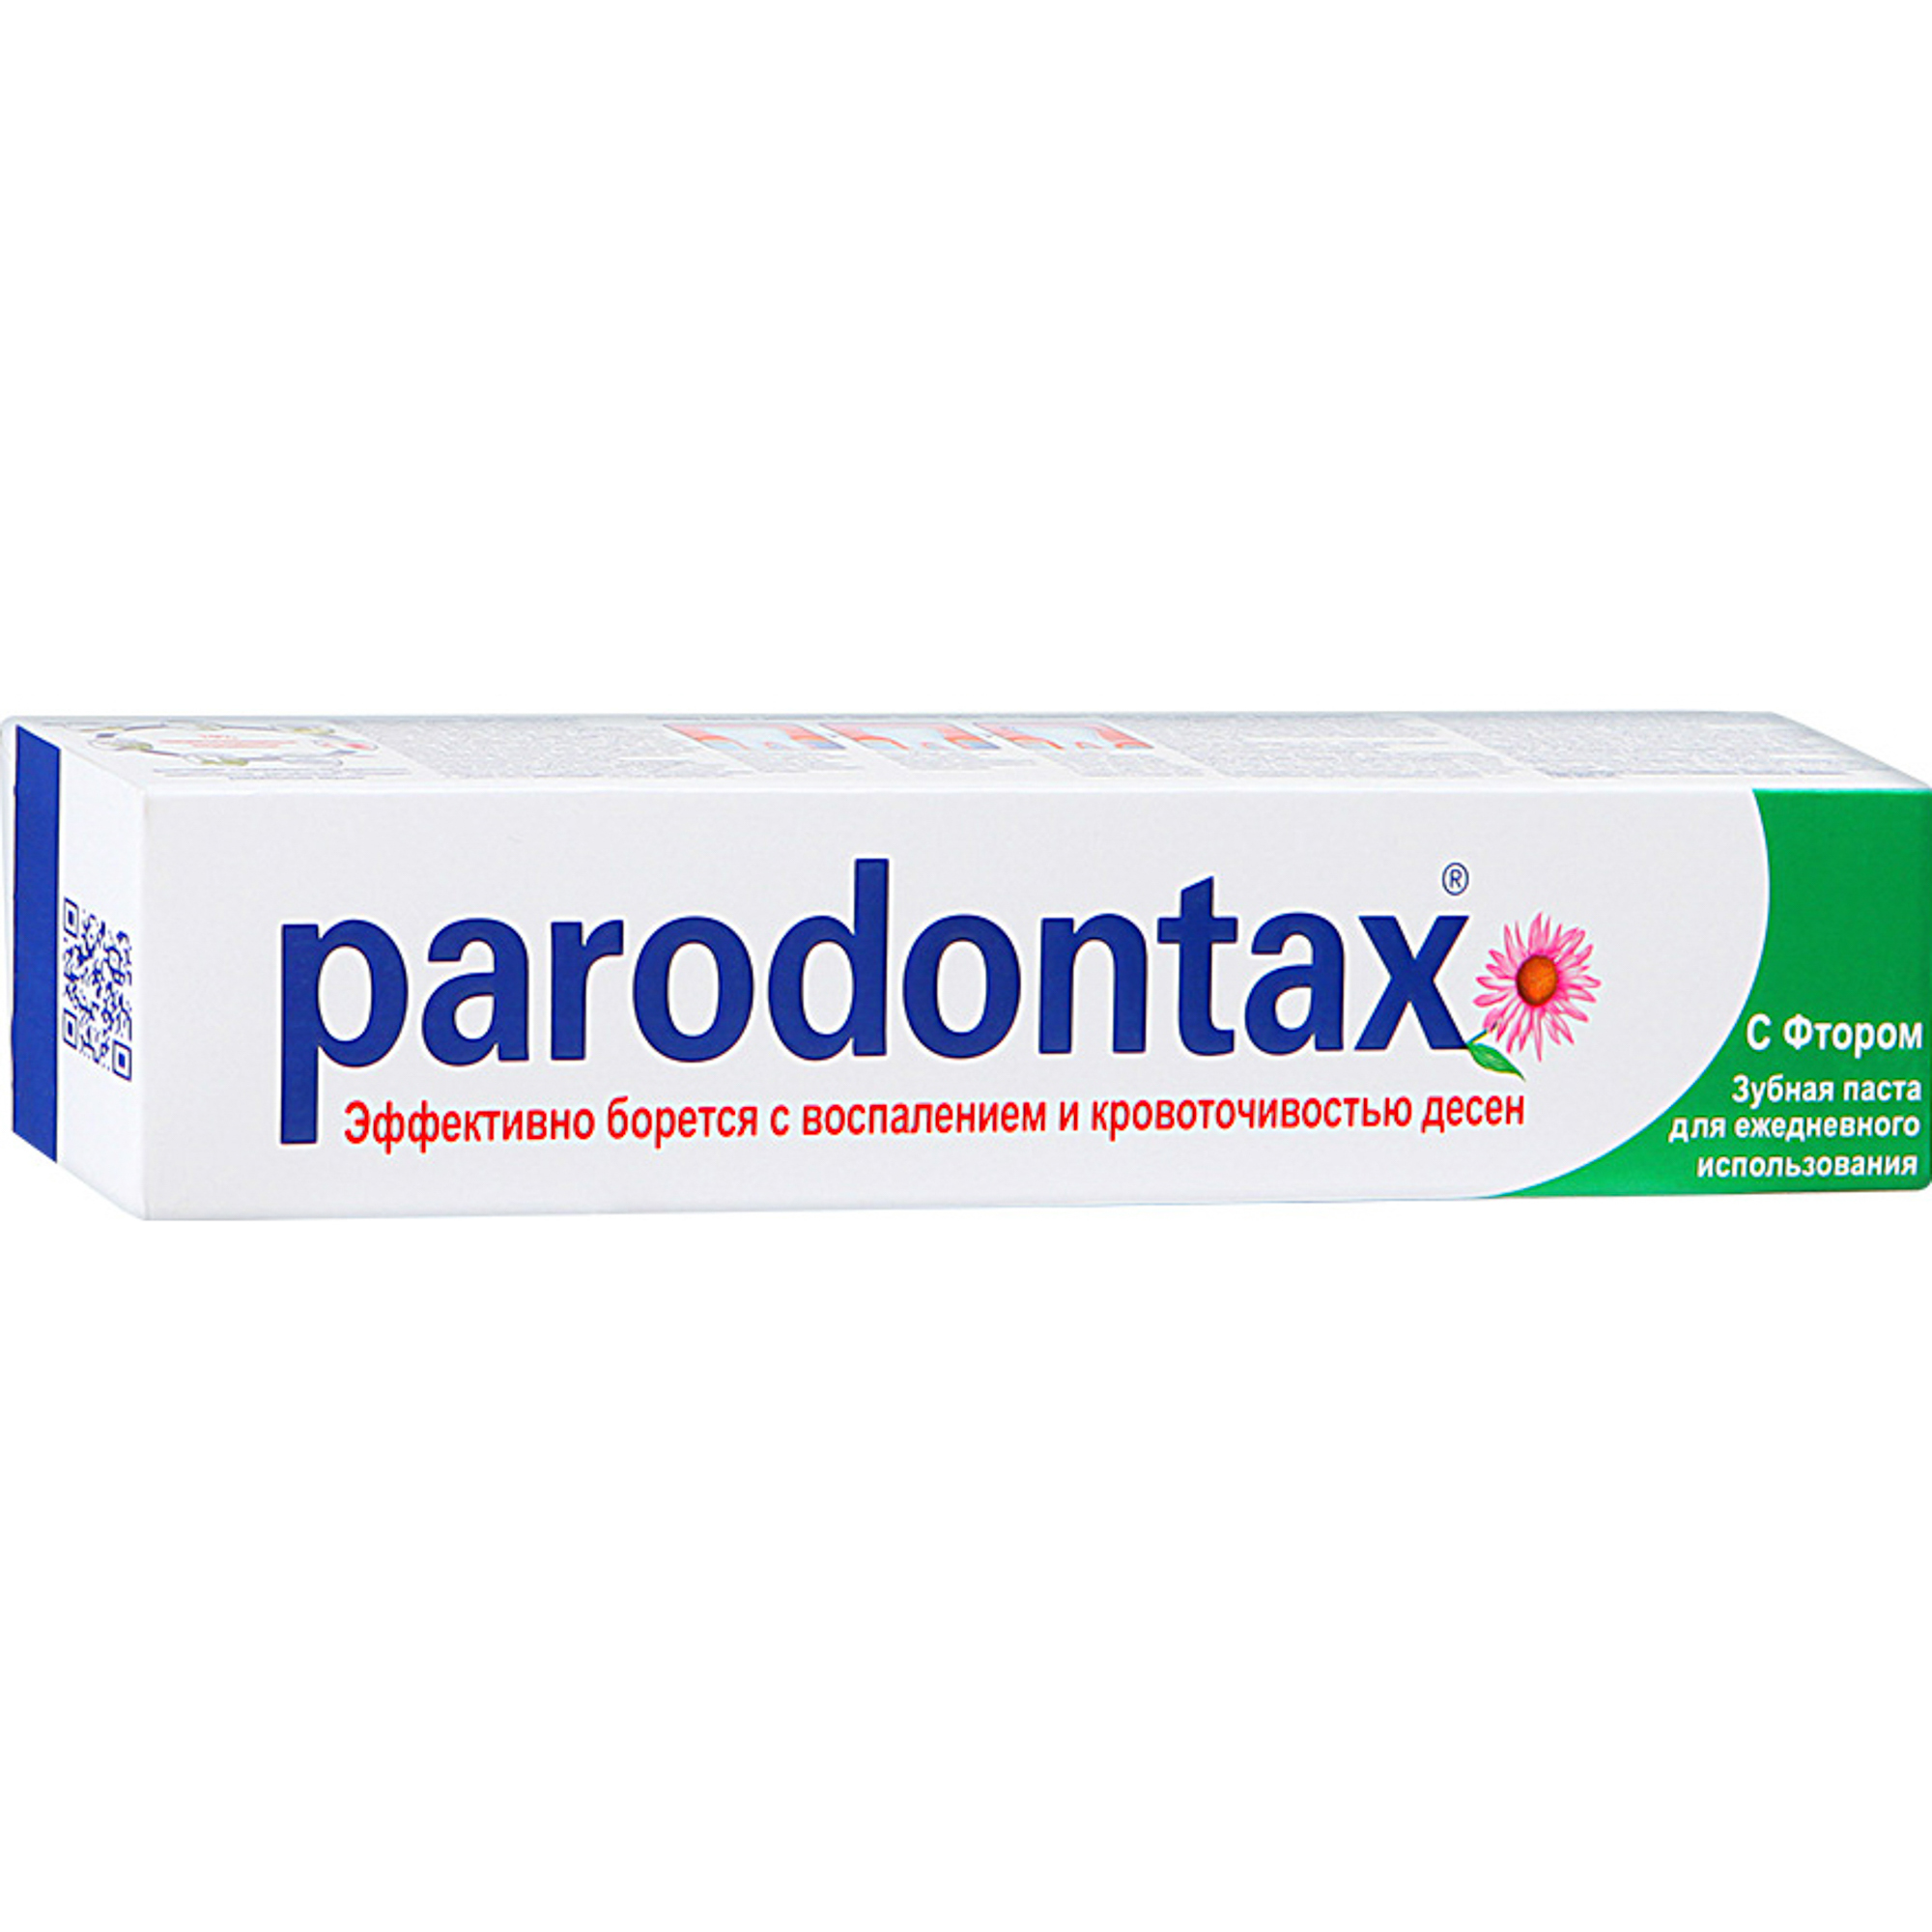 цена Зубная паста Parodontax С фтором 50 мл